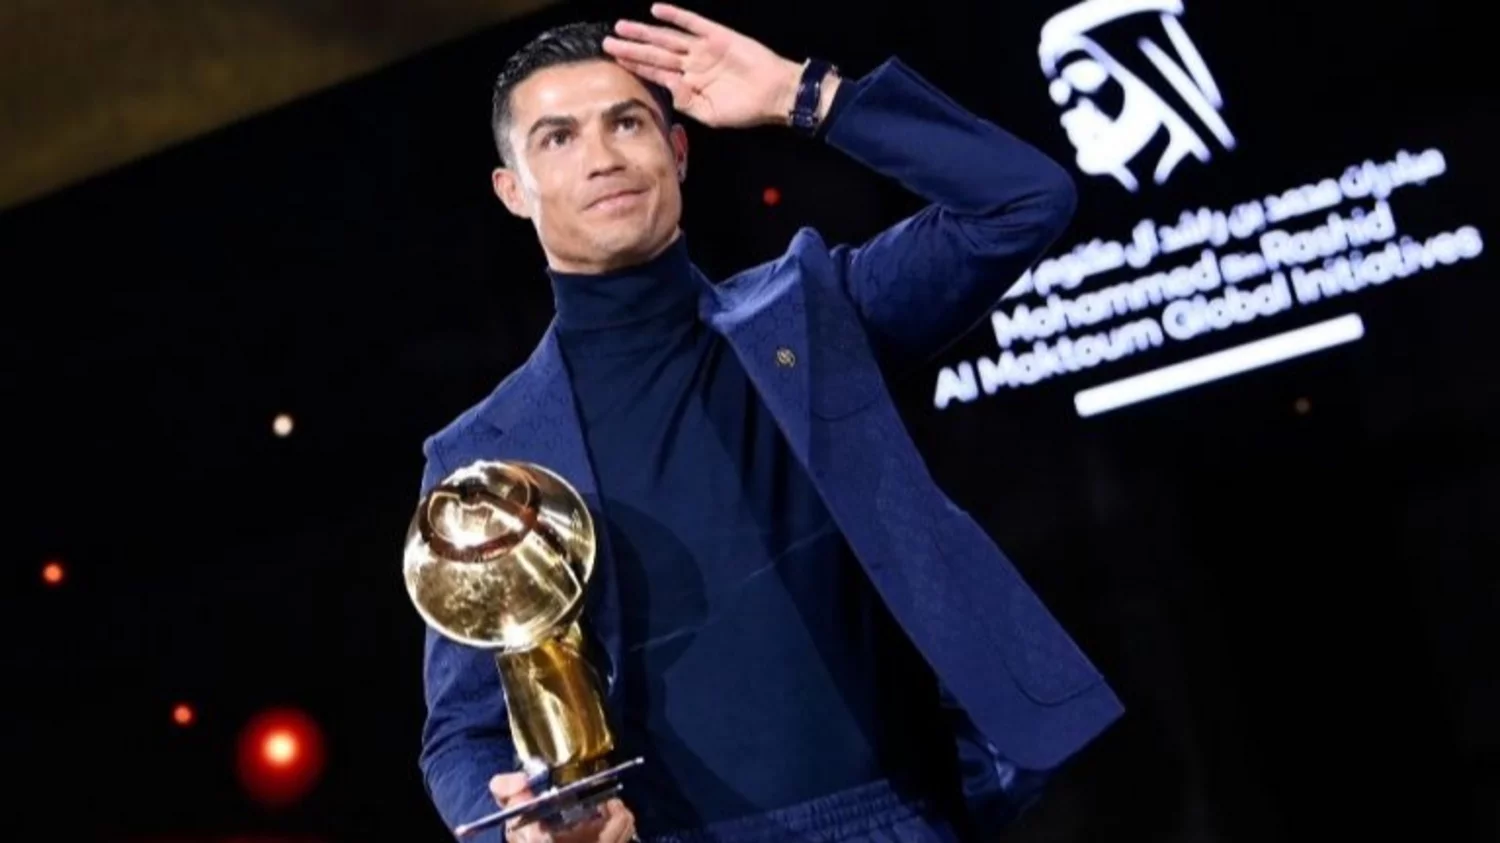 23ᴋ 🌟🇦🇷 on X: Si alguien merece el 'Super balón de oro' ese es  Cristiano Ronaldo, ganó absolutamente todo sin ayudas , en la selección y en  clubes diferentes. Con trabajo 